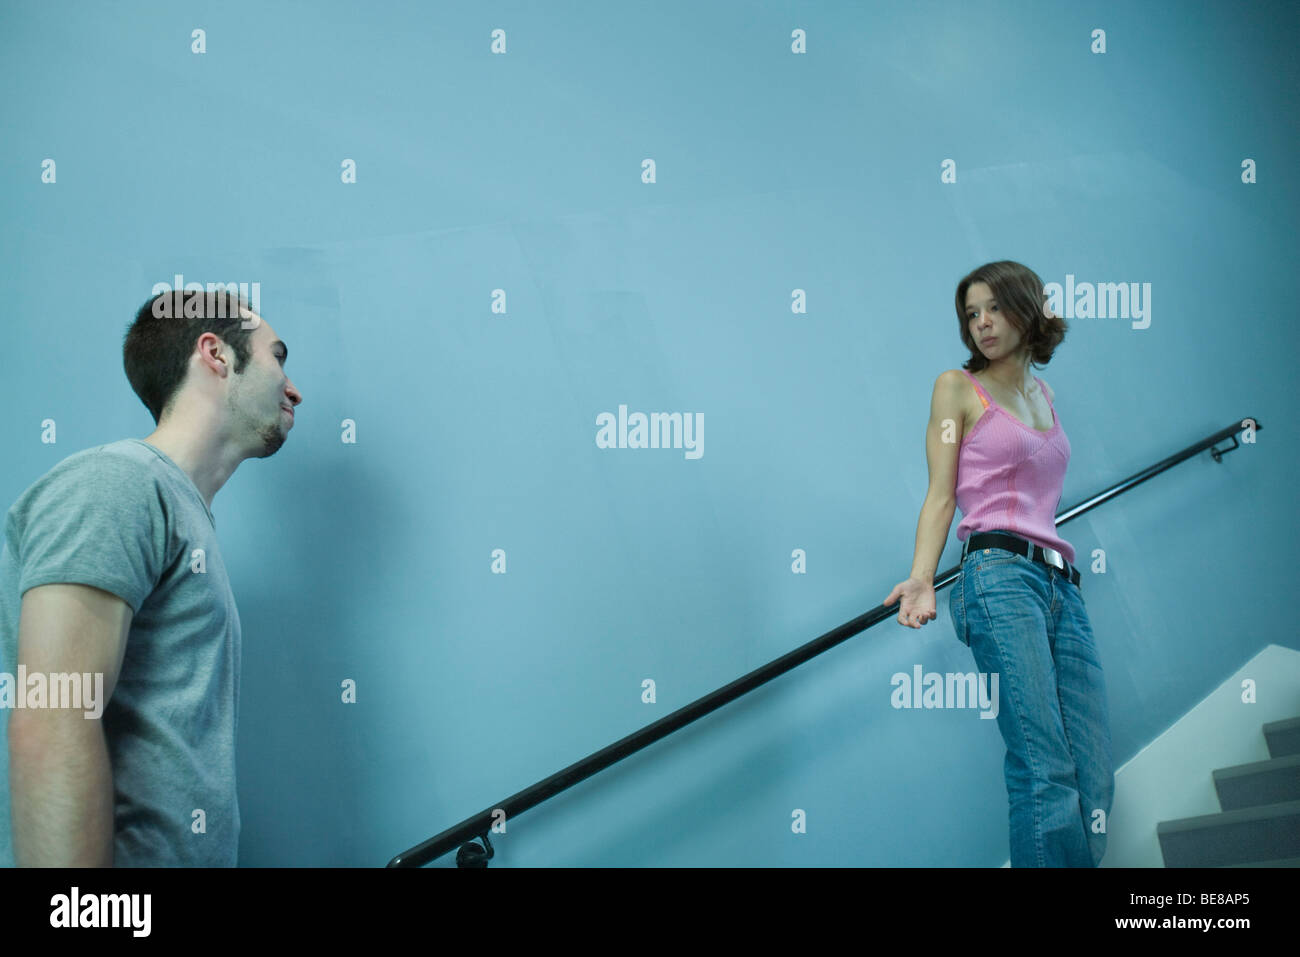 Mujer subir escaleras, buscando questioningly al hombre detrás de ella Foto de stock